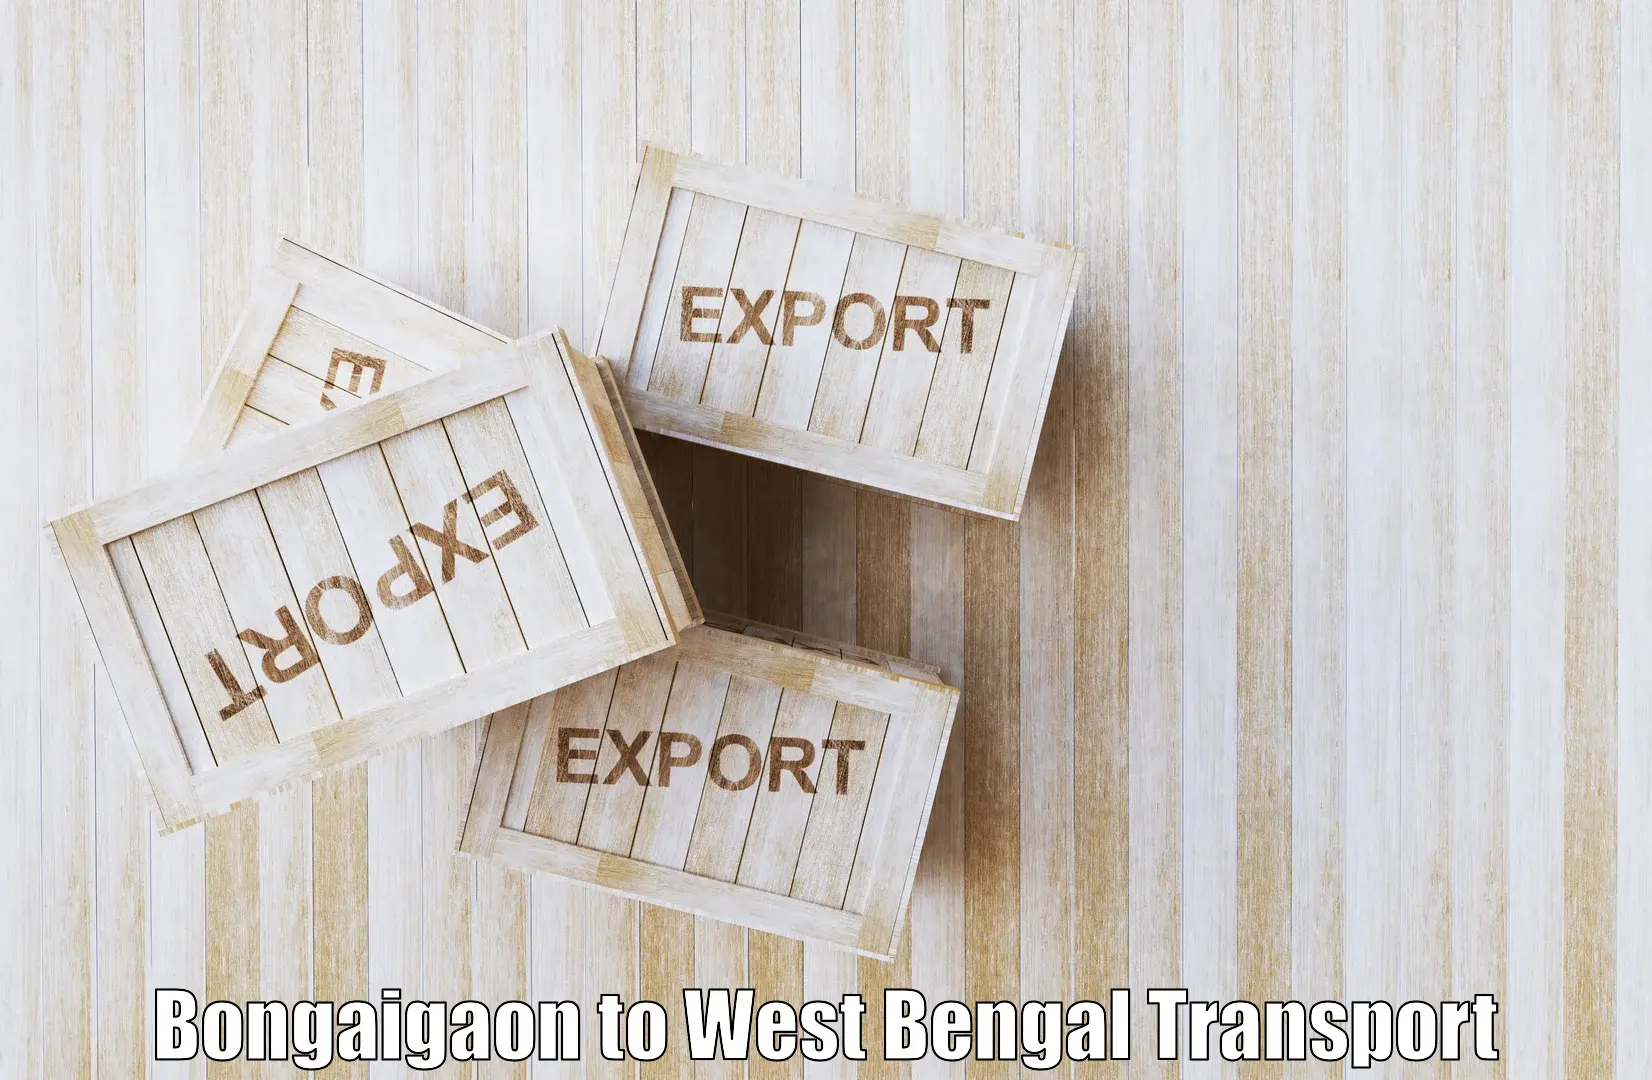 Express transport services Bongaigaon to Bagdogra